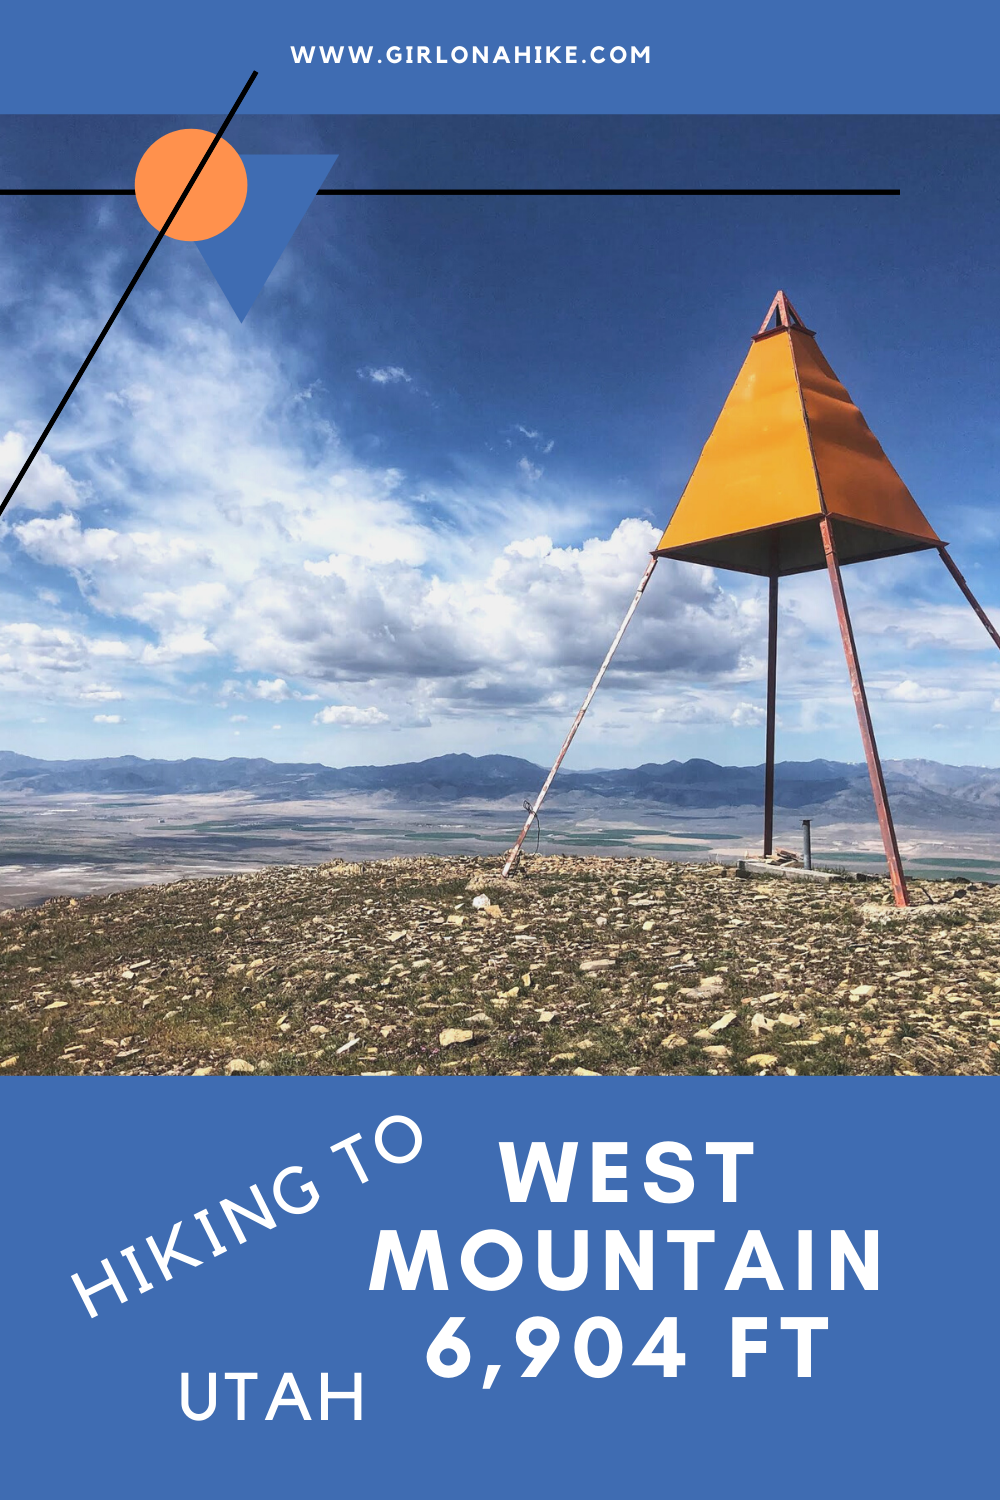 Hiking West Mountain (6,904 ft), Utah